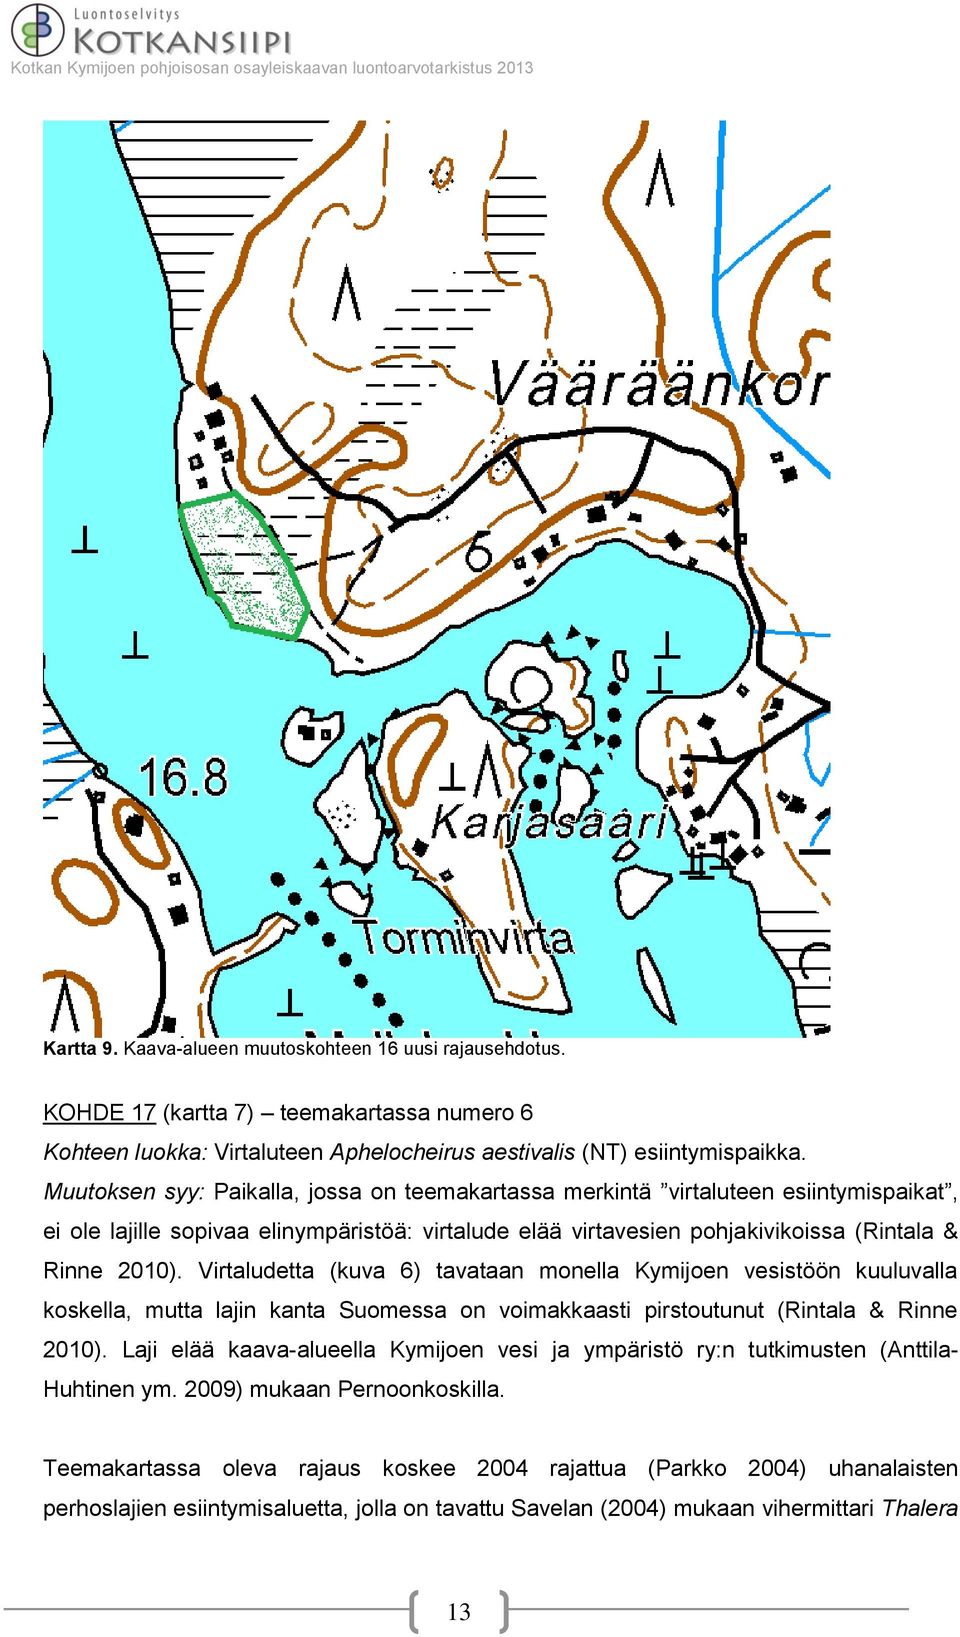 Virtaludetta (kuva 6) tavataan monella Kymijoen vesistöön kuuluvalla koskella, mutta lajin kanta Suomessa on voimakkaasti pirstoutunut (Rintala & Rinne 2010).